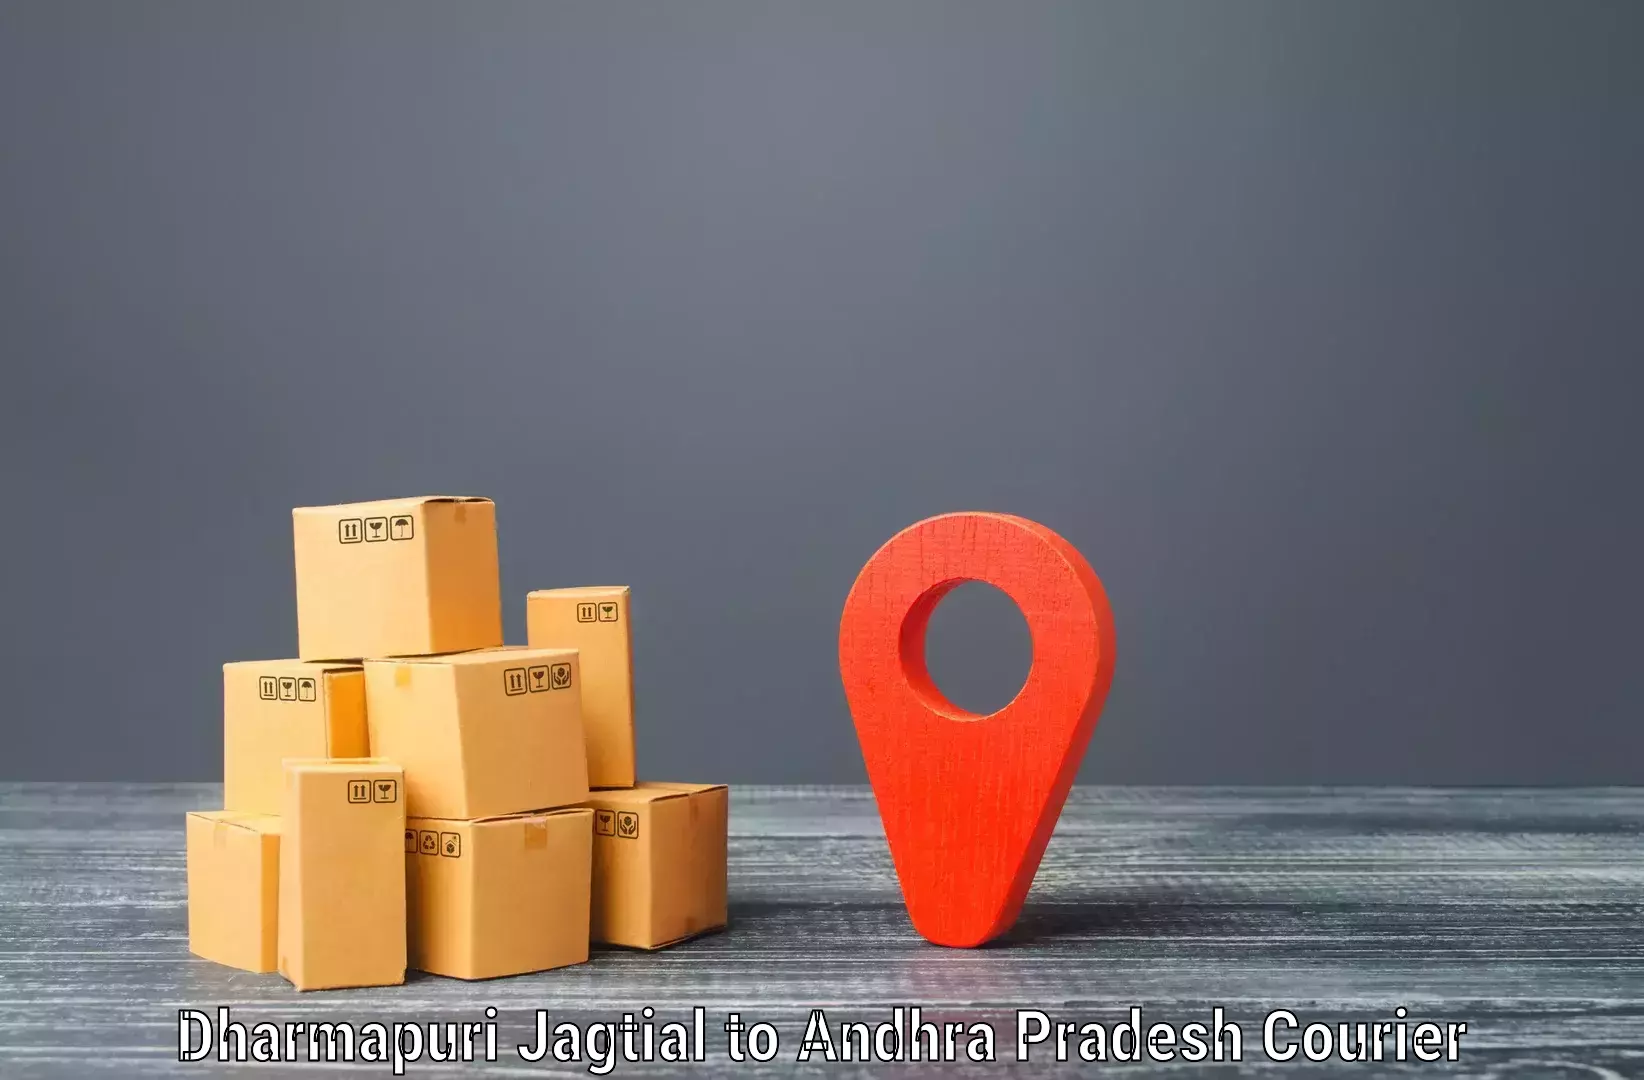 Affordable parcel service Dharmapuri Jagtial to Andhra Pradesh